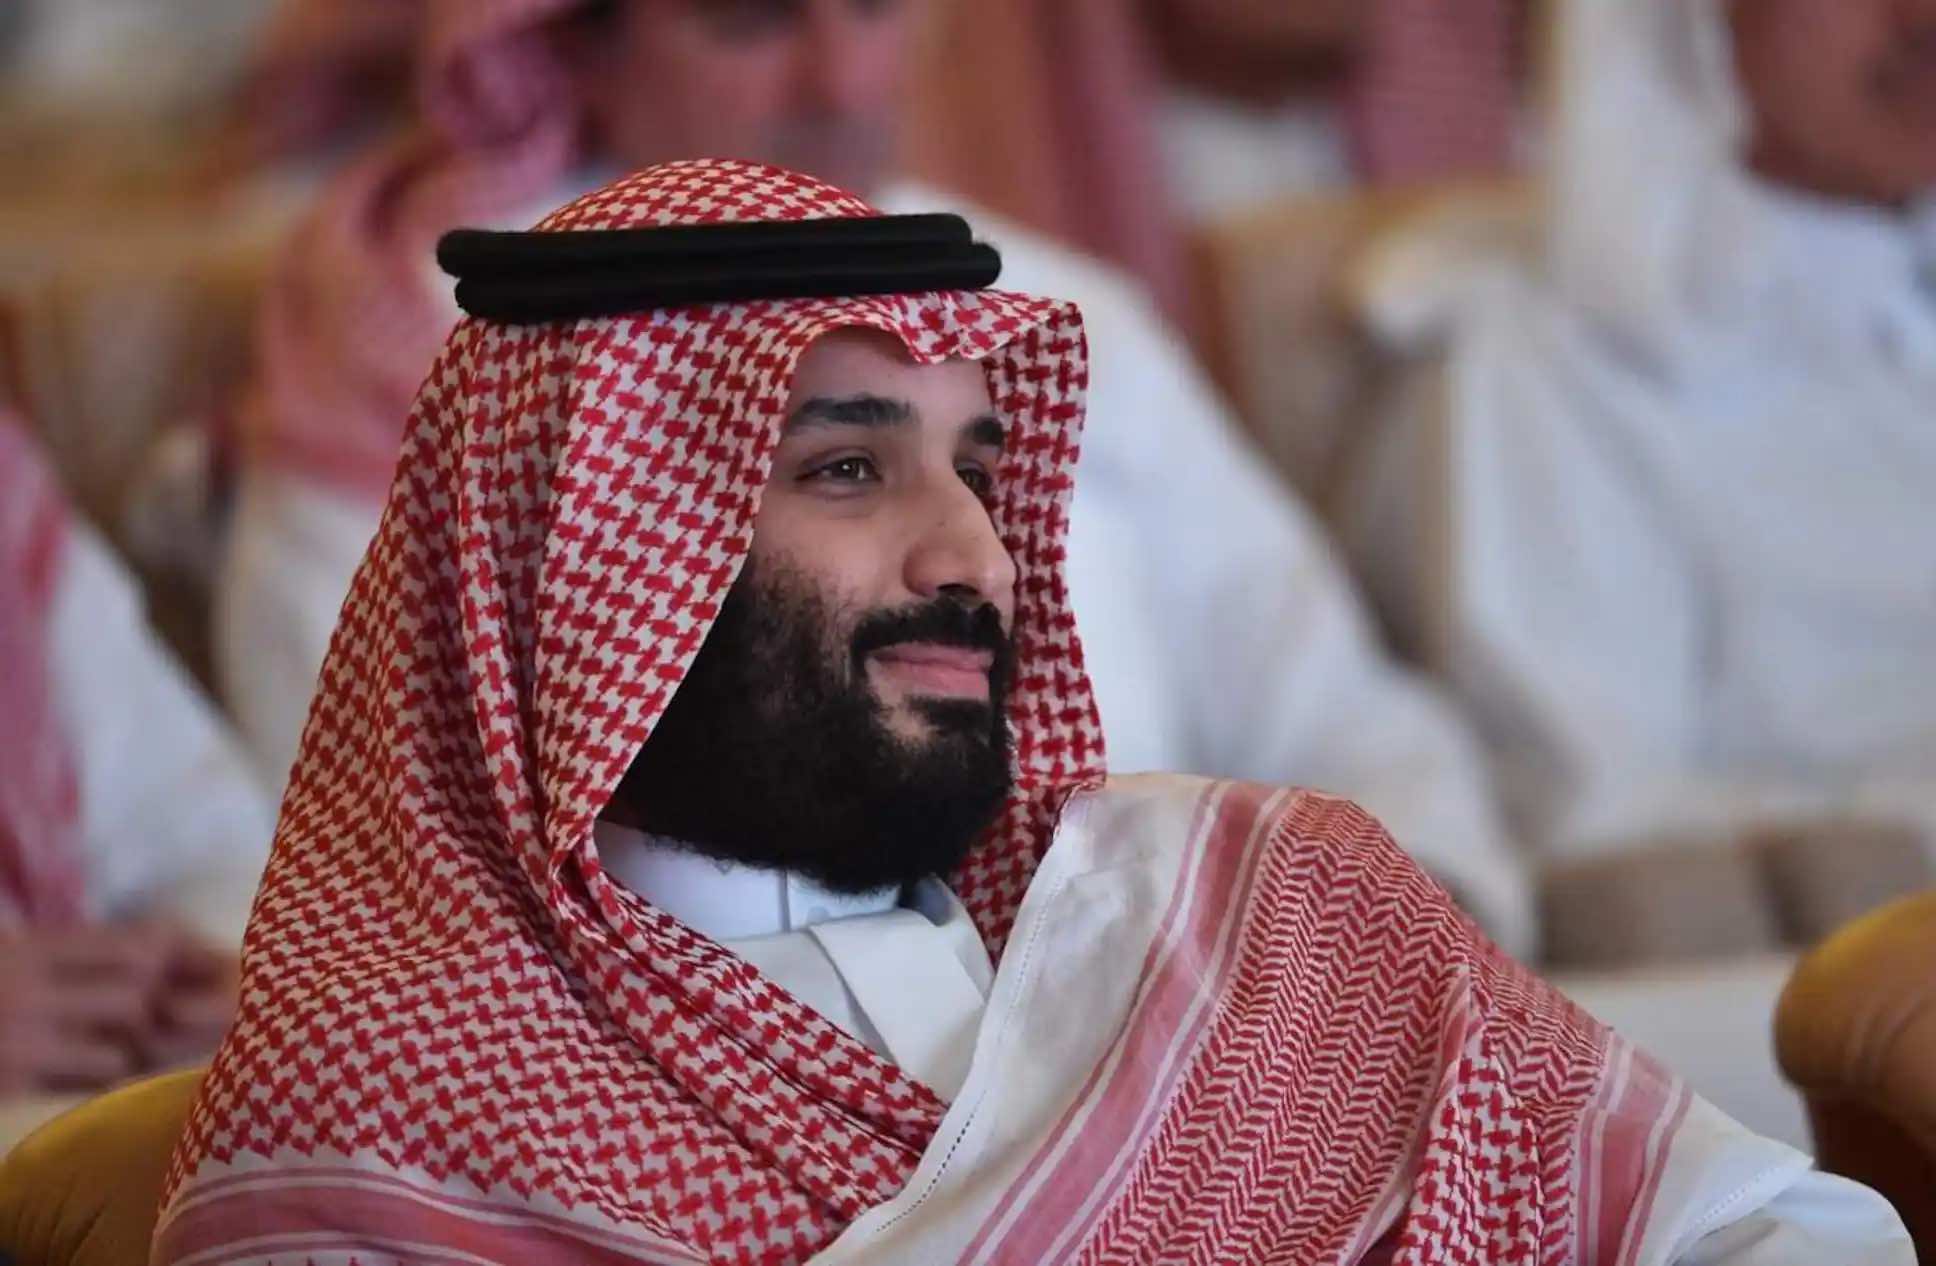 Des matchs de soccer, des grands prix de Formule 1, des courses automobiles, des tournois de golf et des galas de boxe figurent parmi la vingtaine de grands évènements sportifs présentés à travers l’Arabie saoudite depuis 2018. Mohammed Ben Salmane a dépensé des dizaines de milliards $ pour les attirer dans son pays.